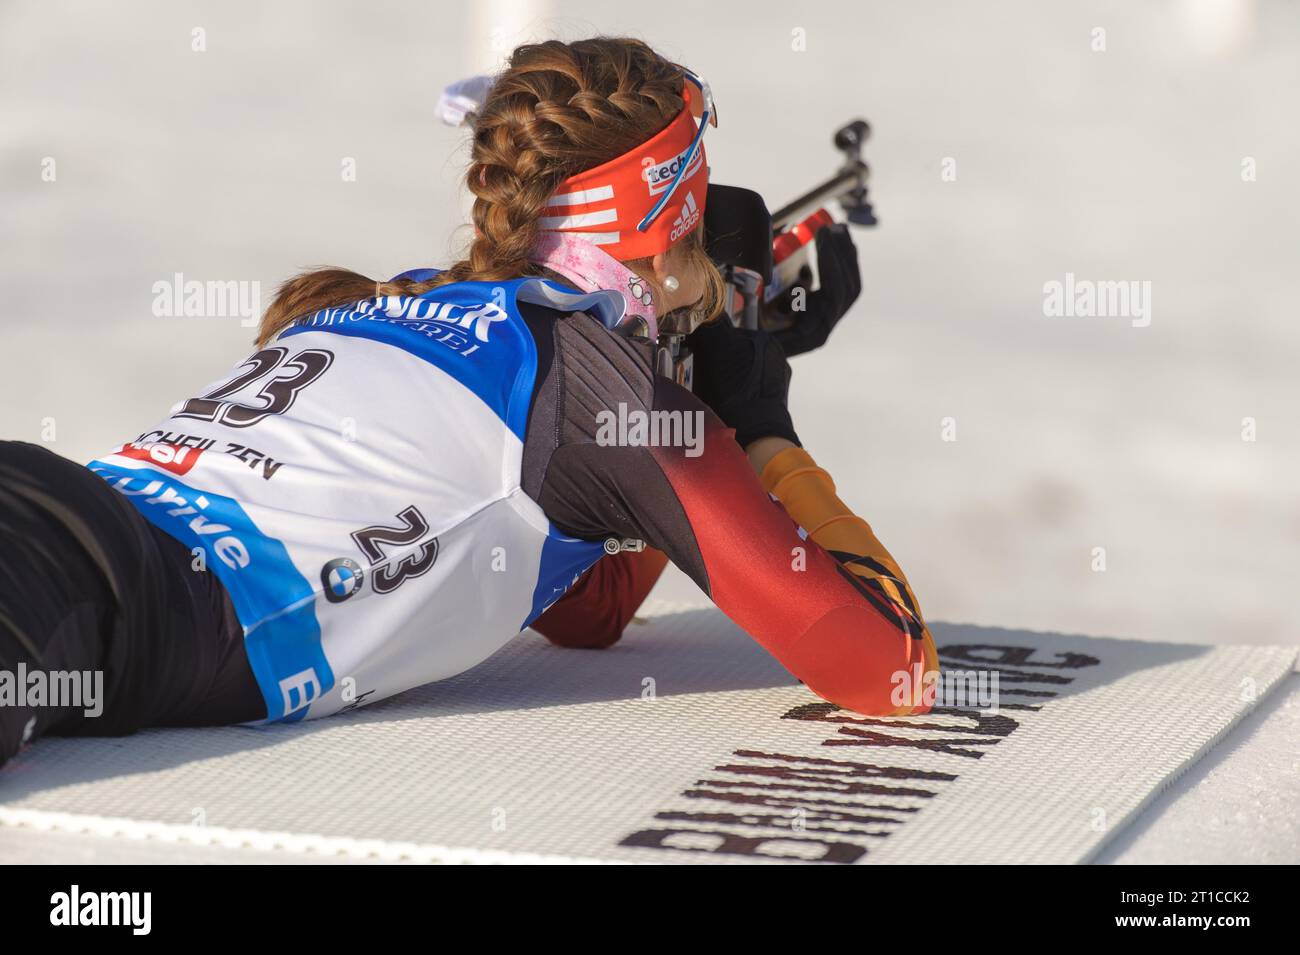 Luise Kummer Aktion Biathlon Welt Cup 10 KM Verfolgung der Frauen in Hochfilzen, Oesterreich am 14.12.2014 Stock Photo